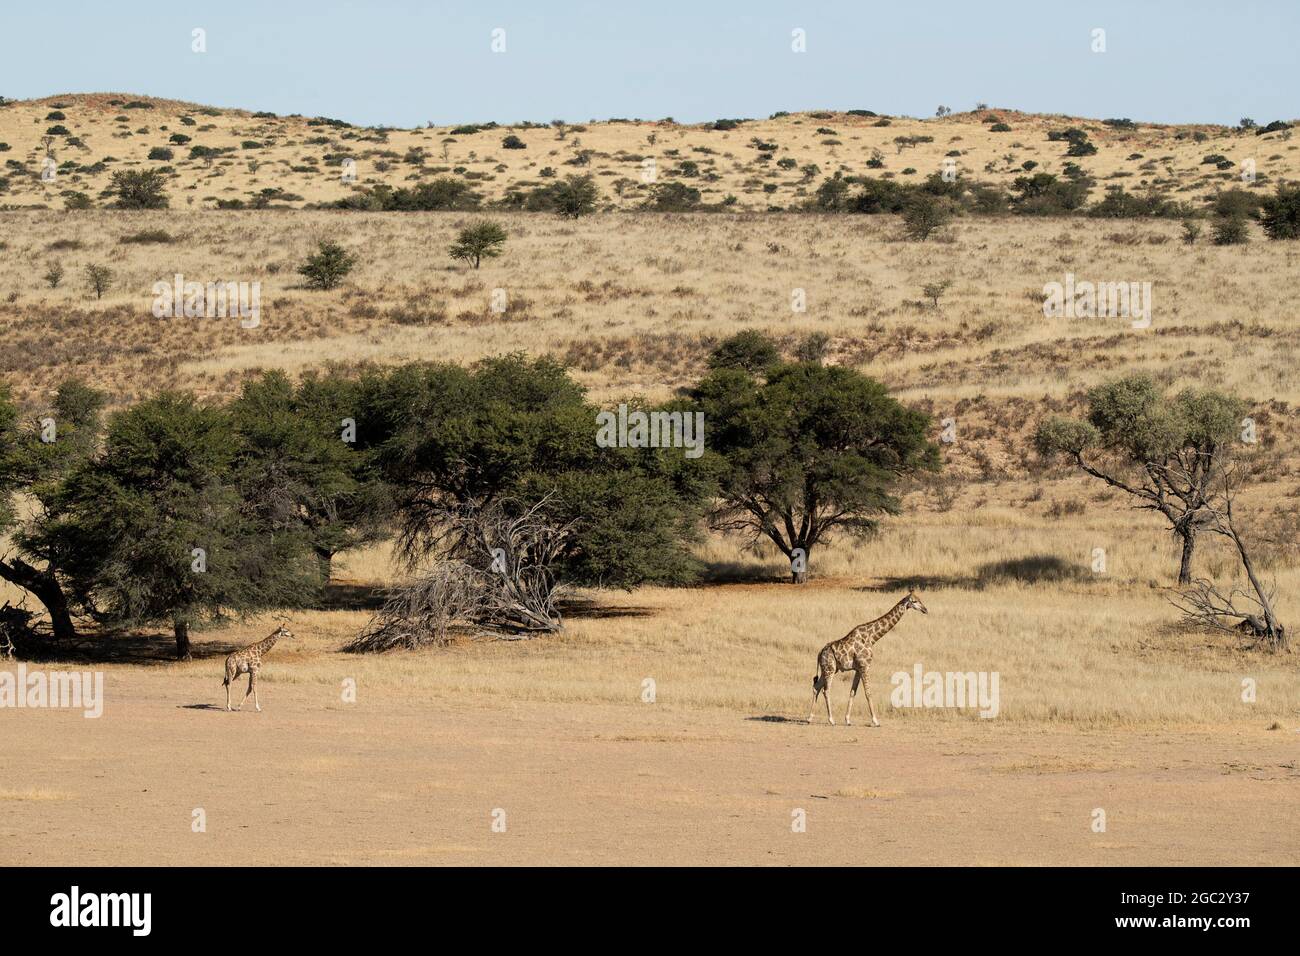 Jirafa meridional, Giraffa camelopardalis giraffa, Parque transfronterizo Kgalagadi, Sudáfrica Foto de stock